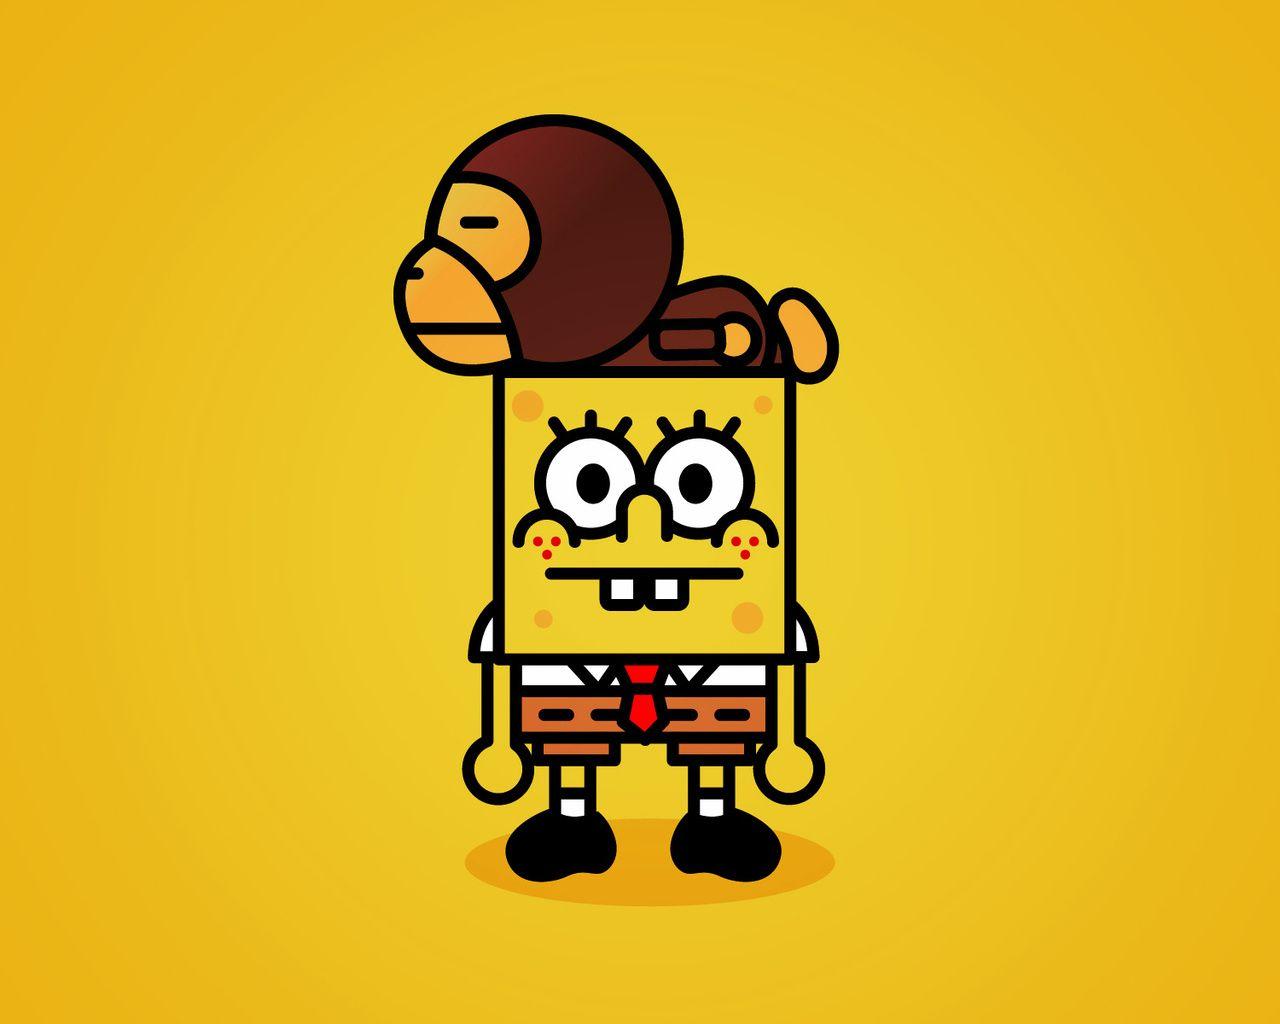 FHDQ Creative Spongebob Squarepants Picture